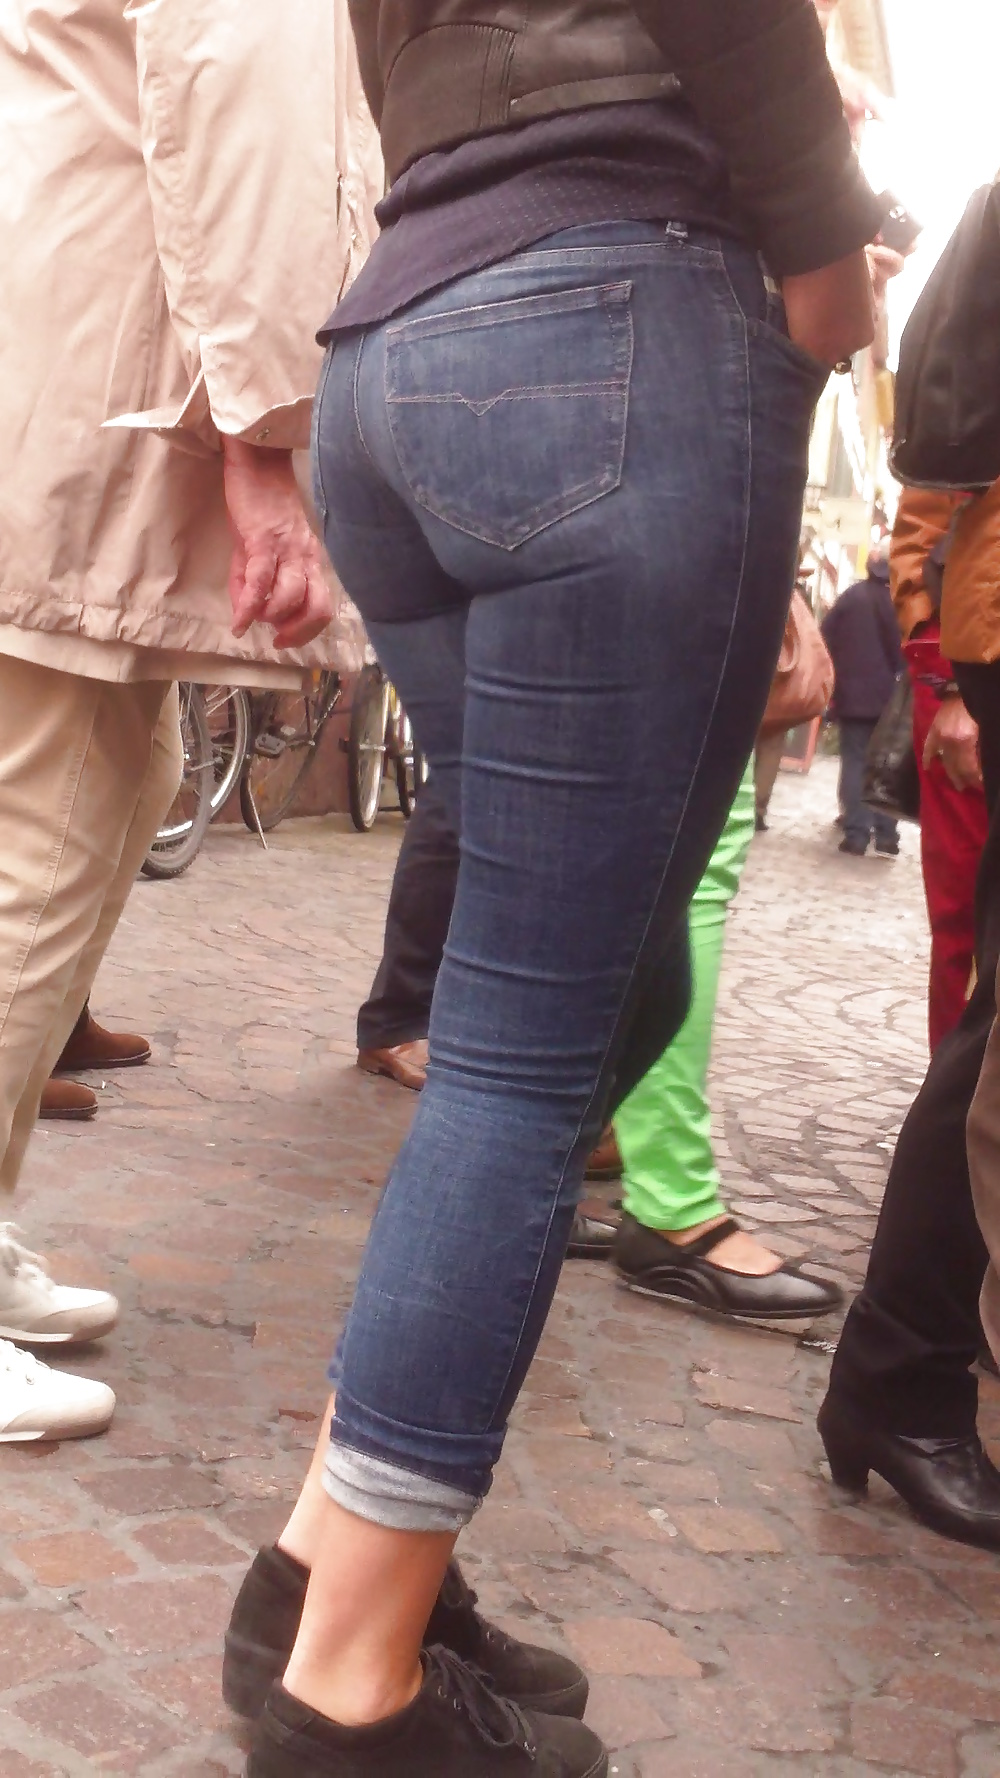 Populäre Jugendlich Mädchen Arsch & Hintern In Jeans Teil 6 #32010439